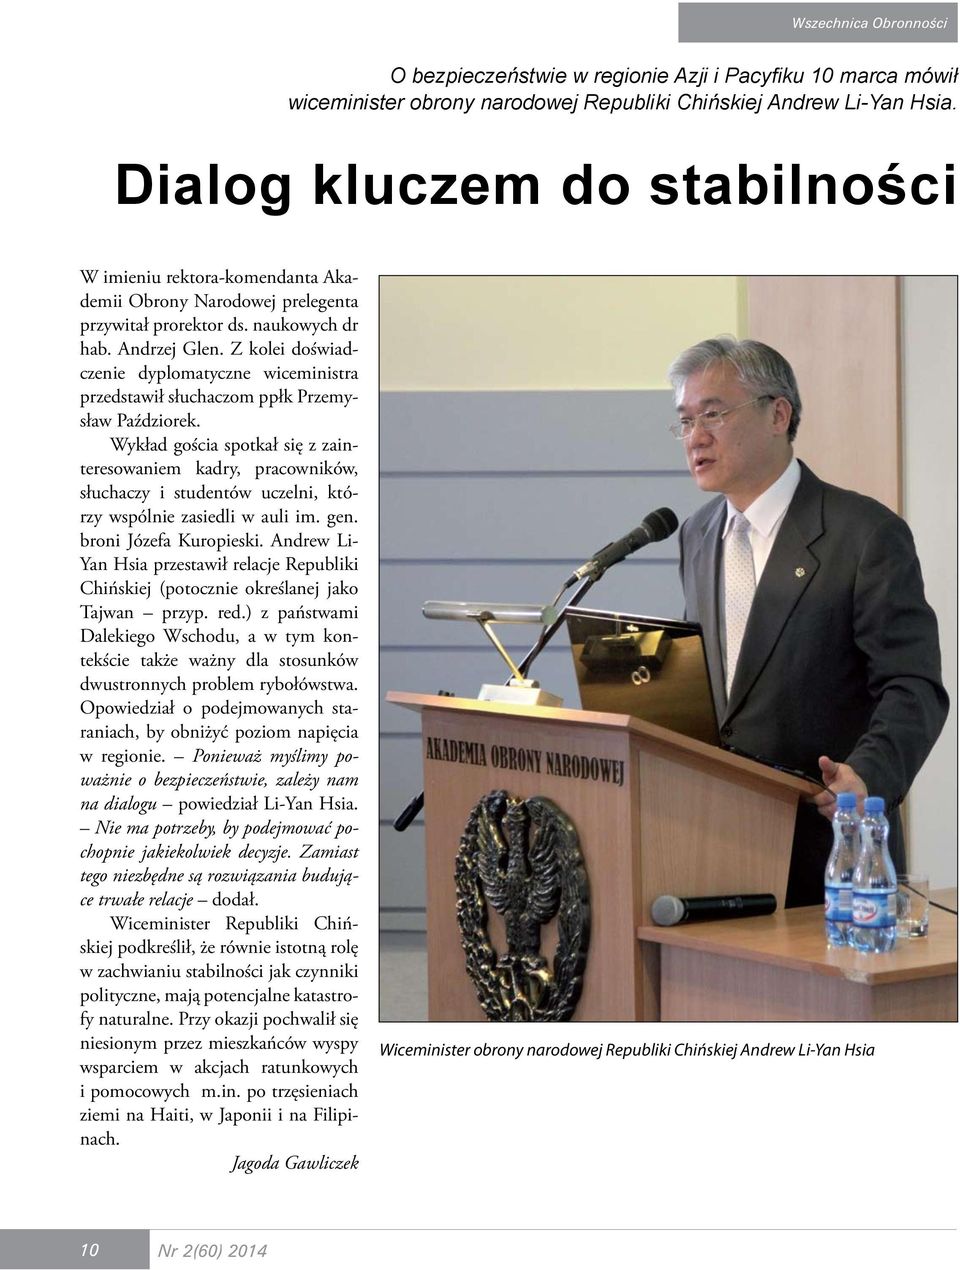 Z kolei doświadczenie dyplomatyczne wiceministra przedstawił słuchaczom ppłk Przemysław Paździorek.